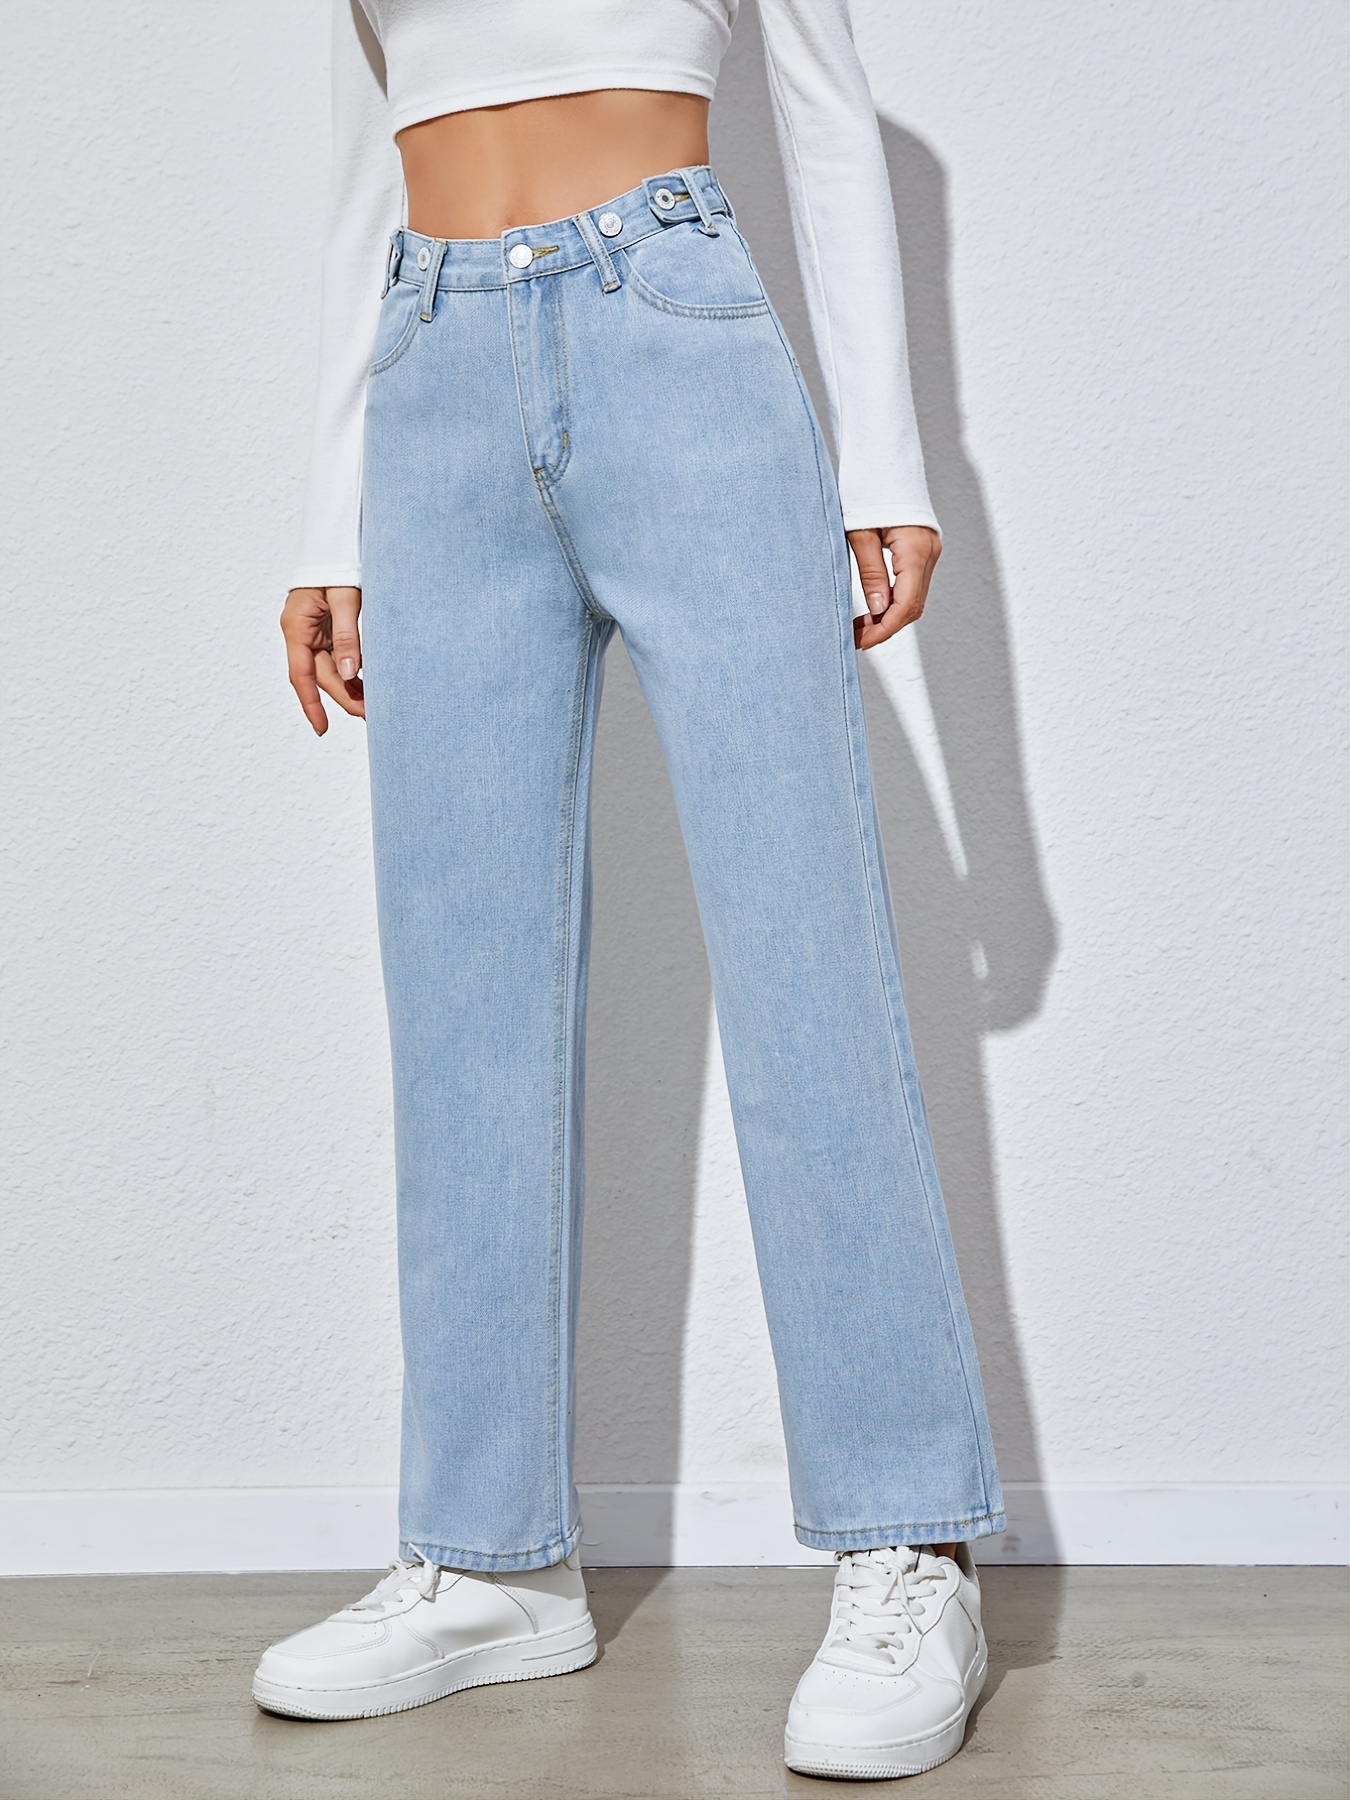 Boyfriend Jeans: Consigue tus JEANS de Tiro Alto para Mujer Ahora! –  Pantalones De Mezclilla CDMX Expertos